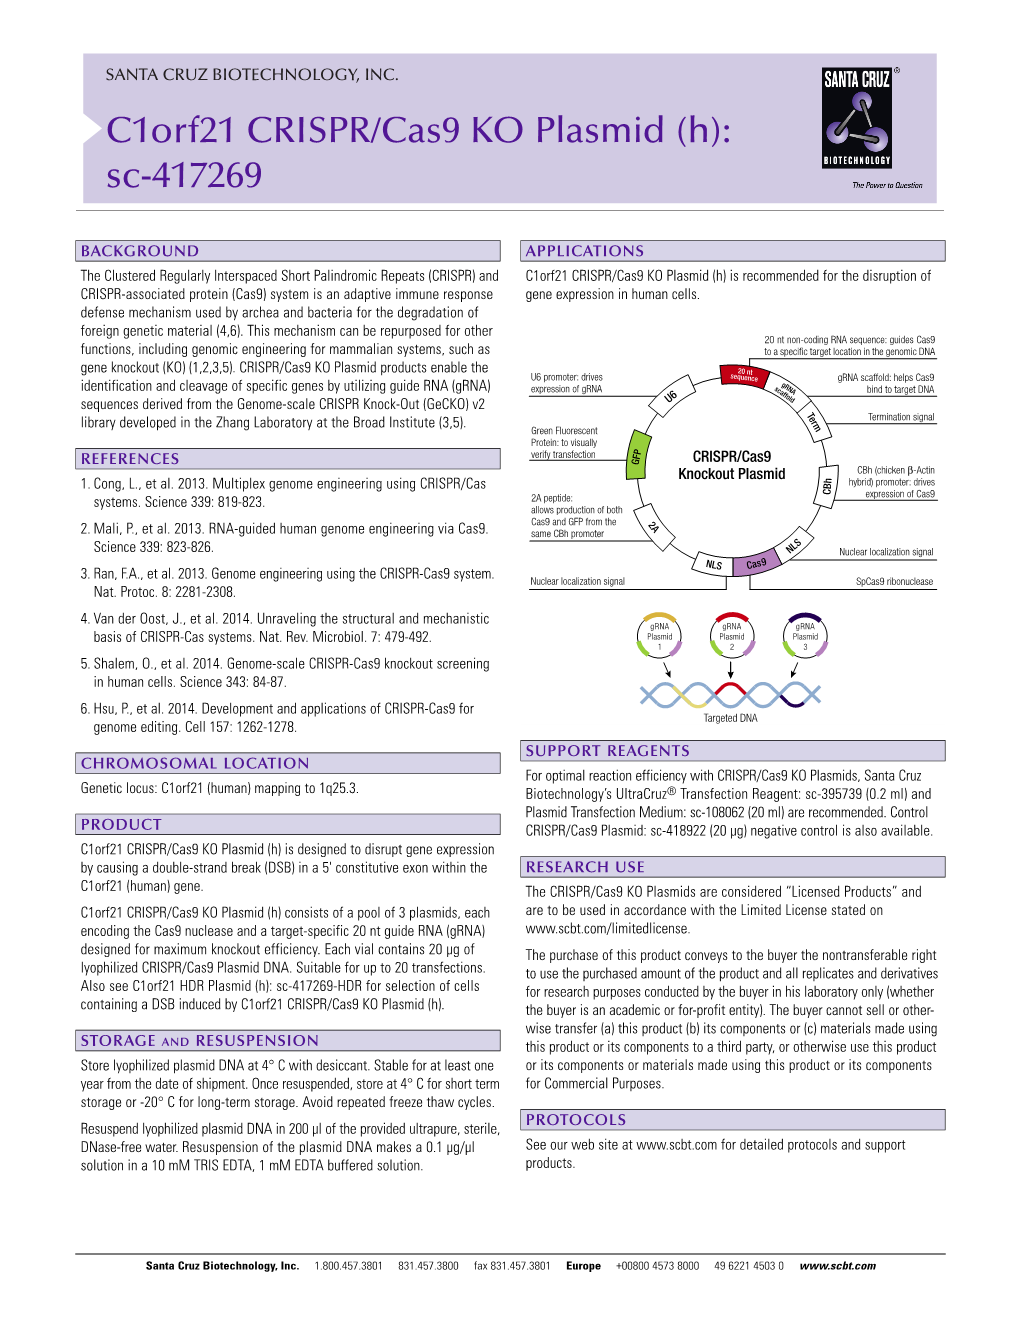 C1orf21 CRISPR/Cas9 KO Plasmid (H): Sc-417269